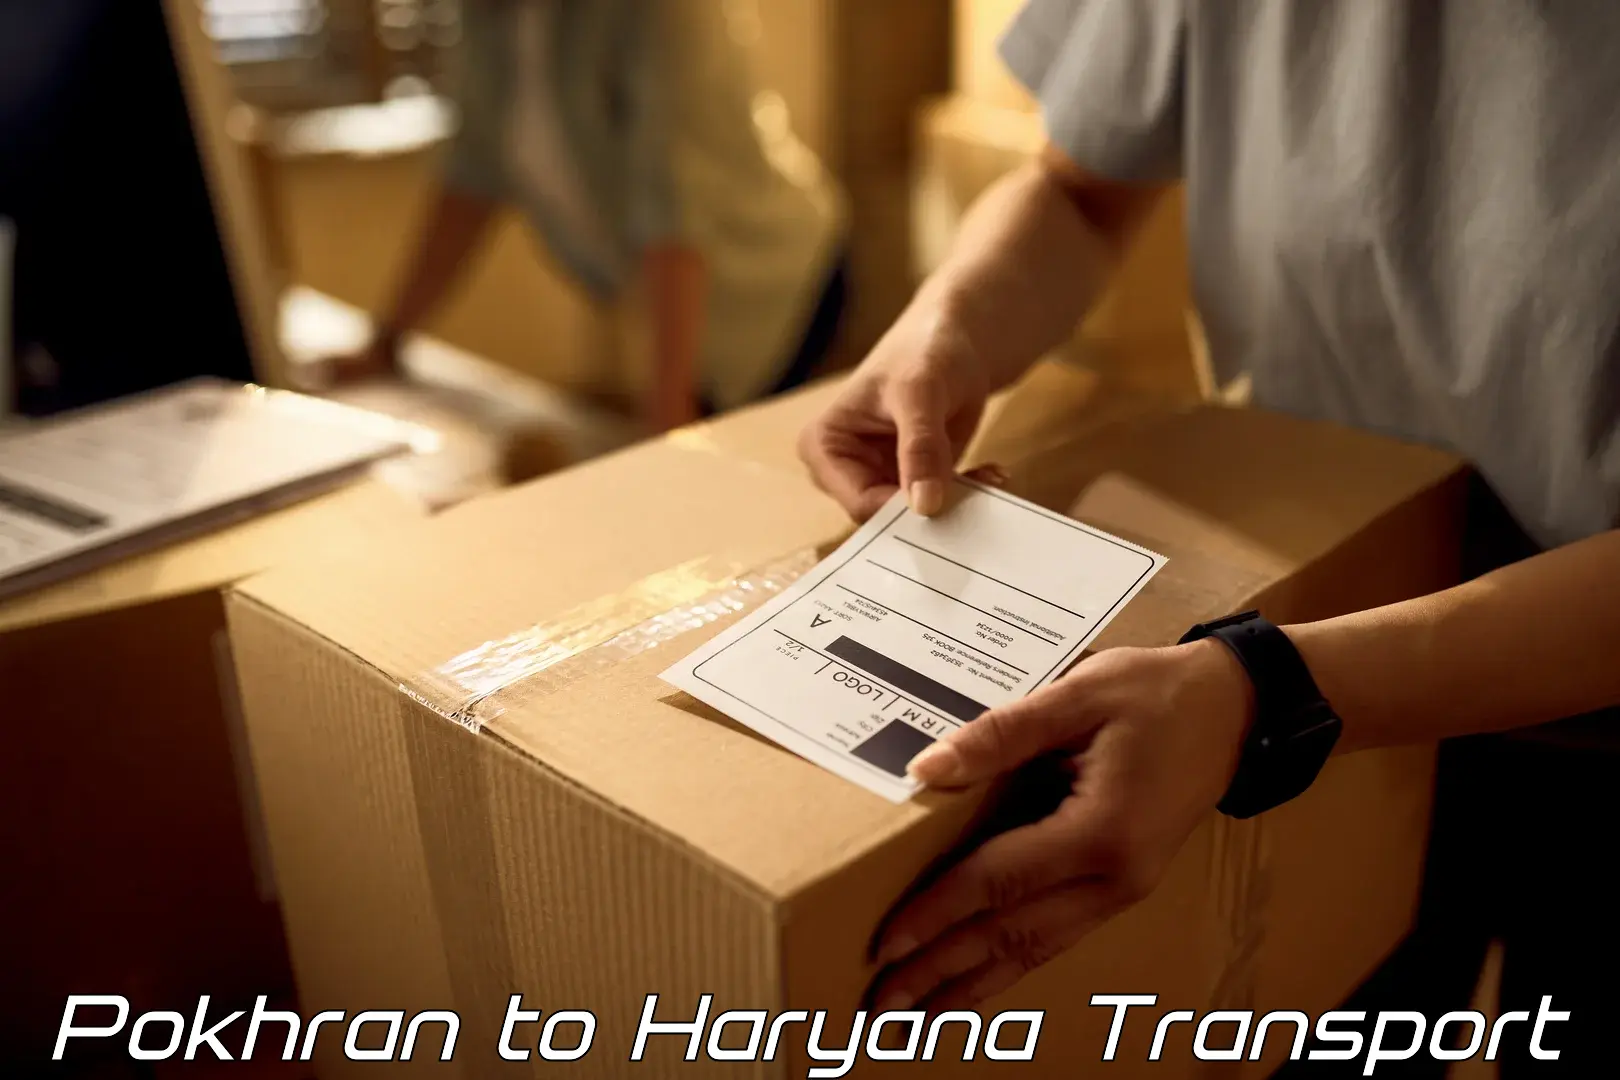 Cargo transportation services Pokhran to Haryana